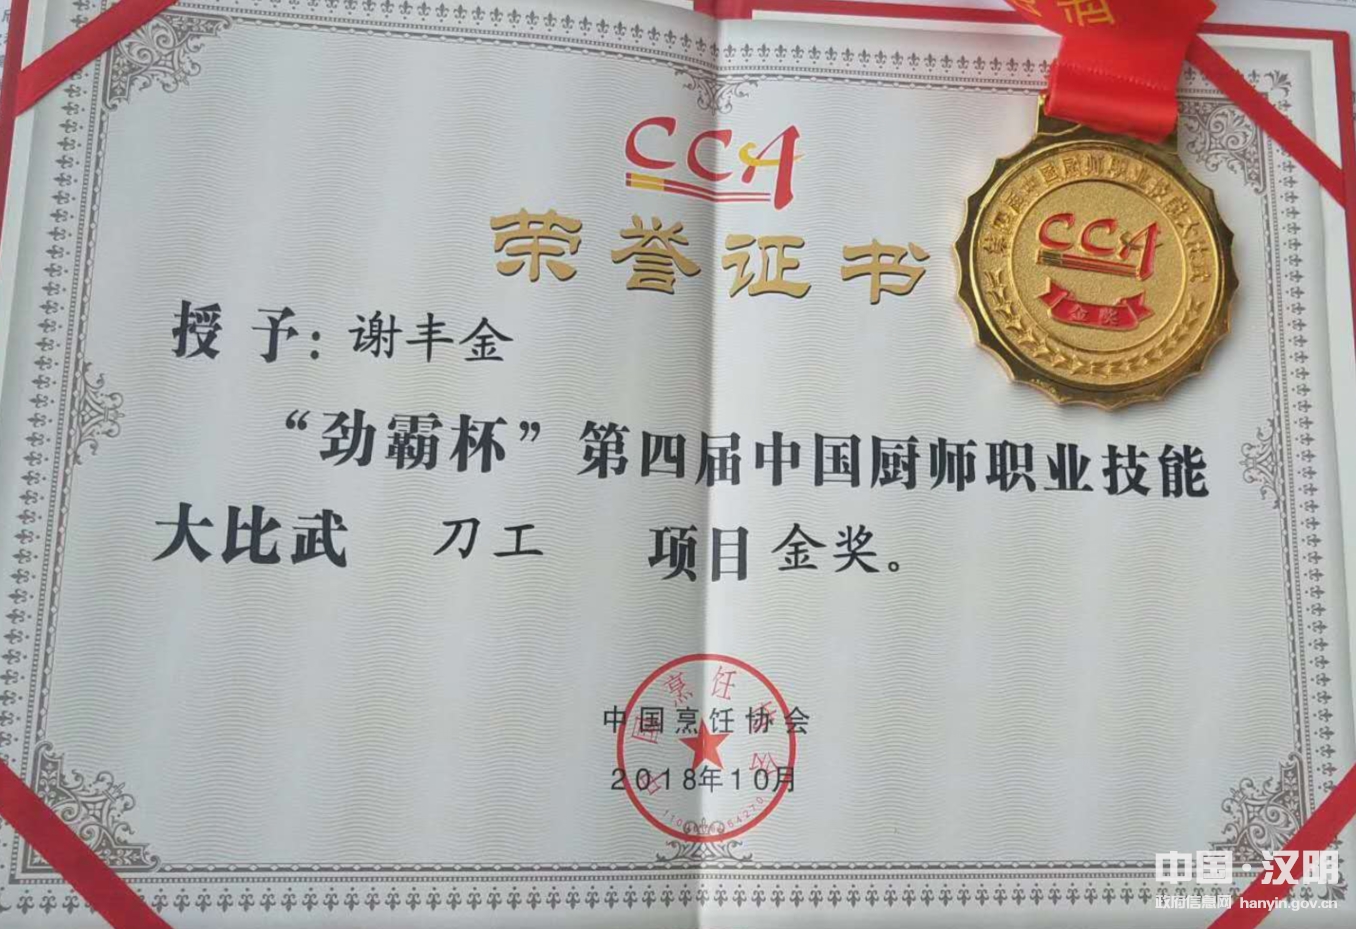 汉阴两名厨师在中国第28届厨师节获金奖